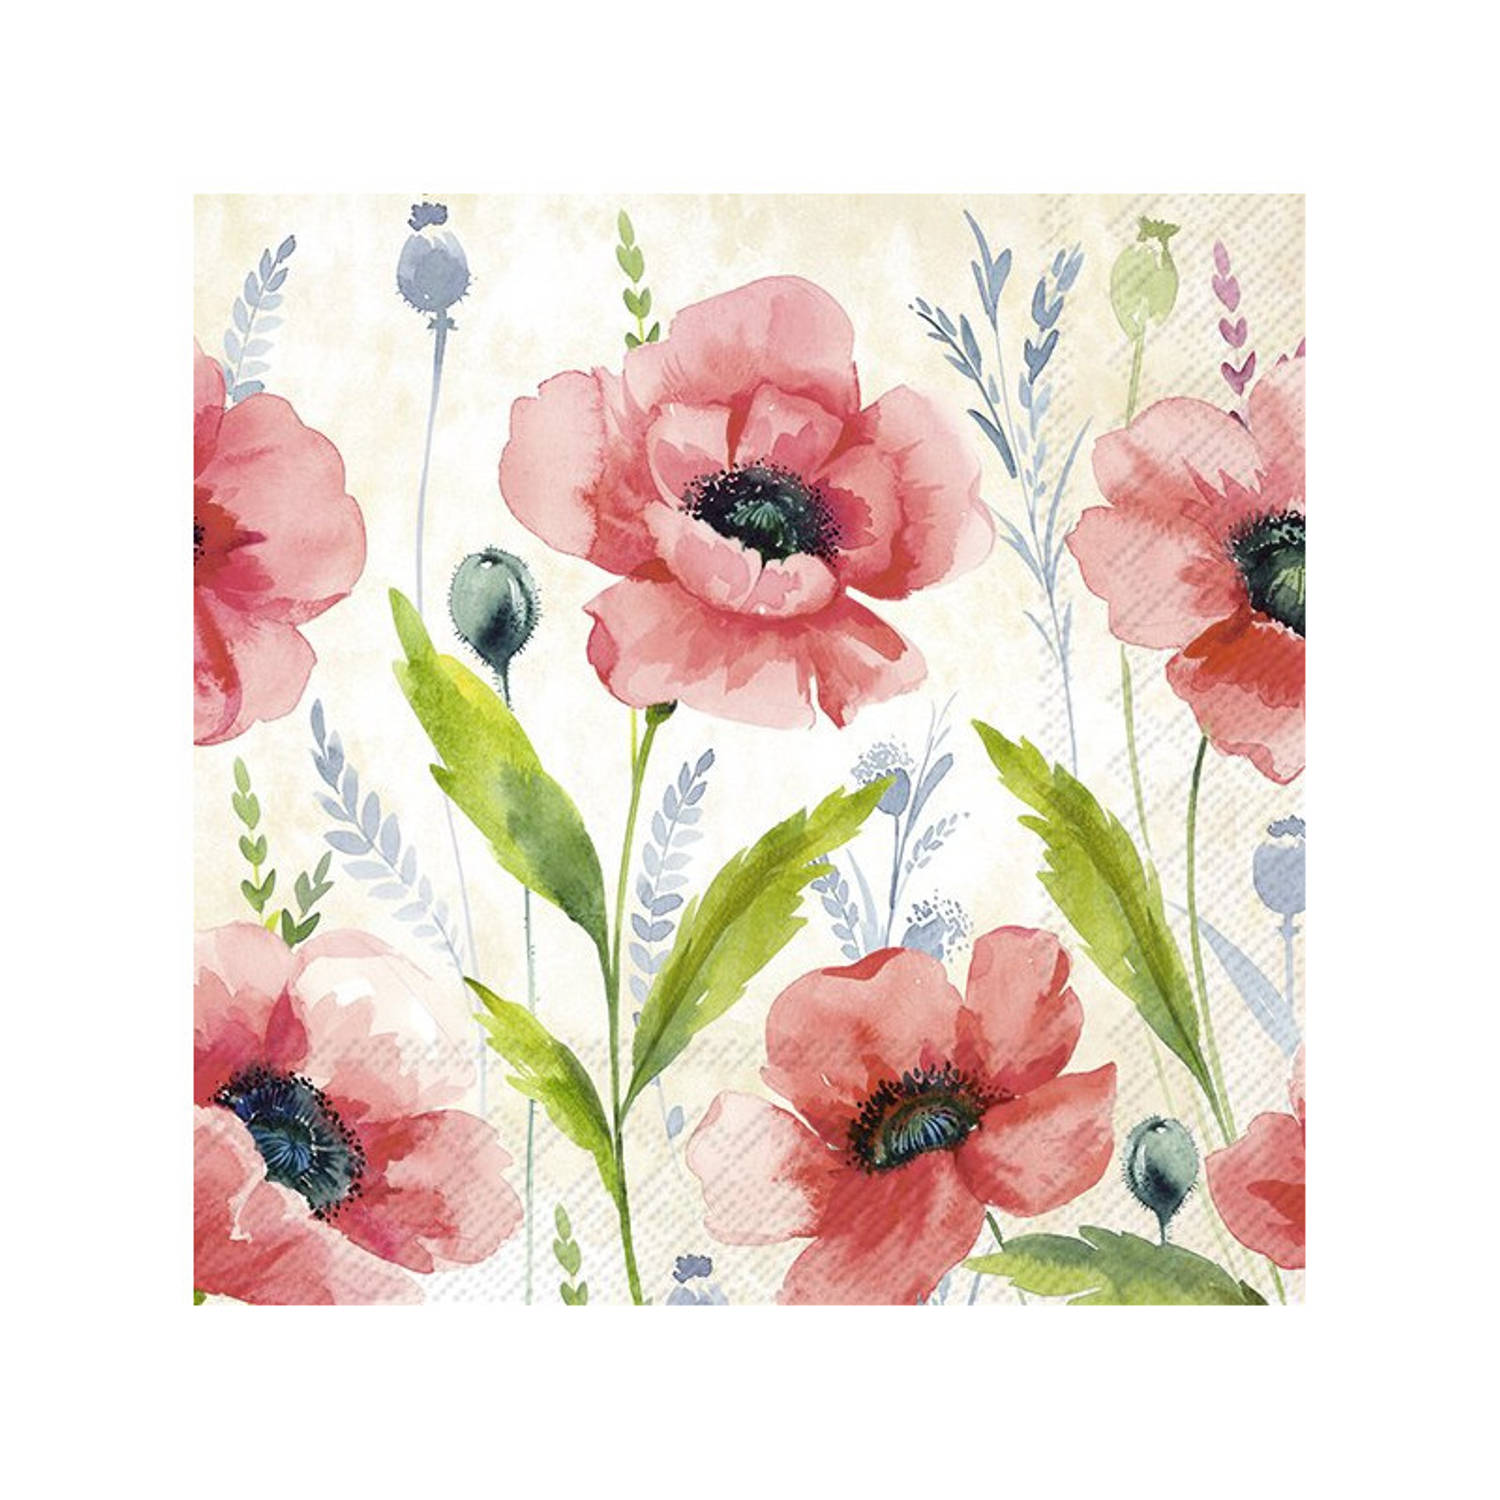 20x Gekleurde 3-laags servetten klaprozen 33 x 33 cm - Voorjaar/lente bloemen thema